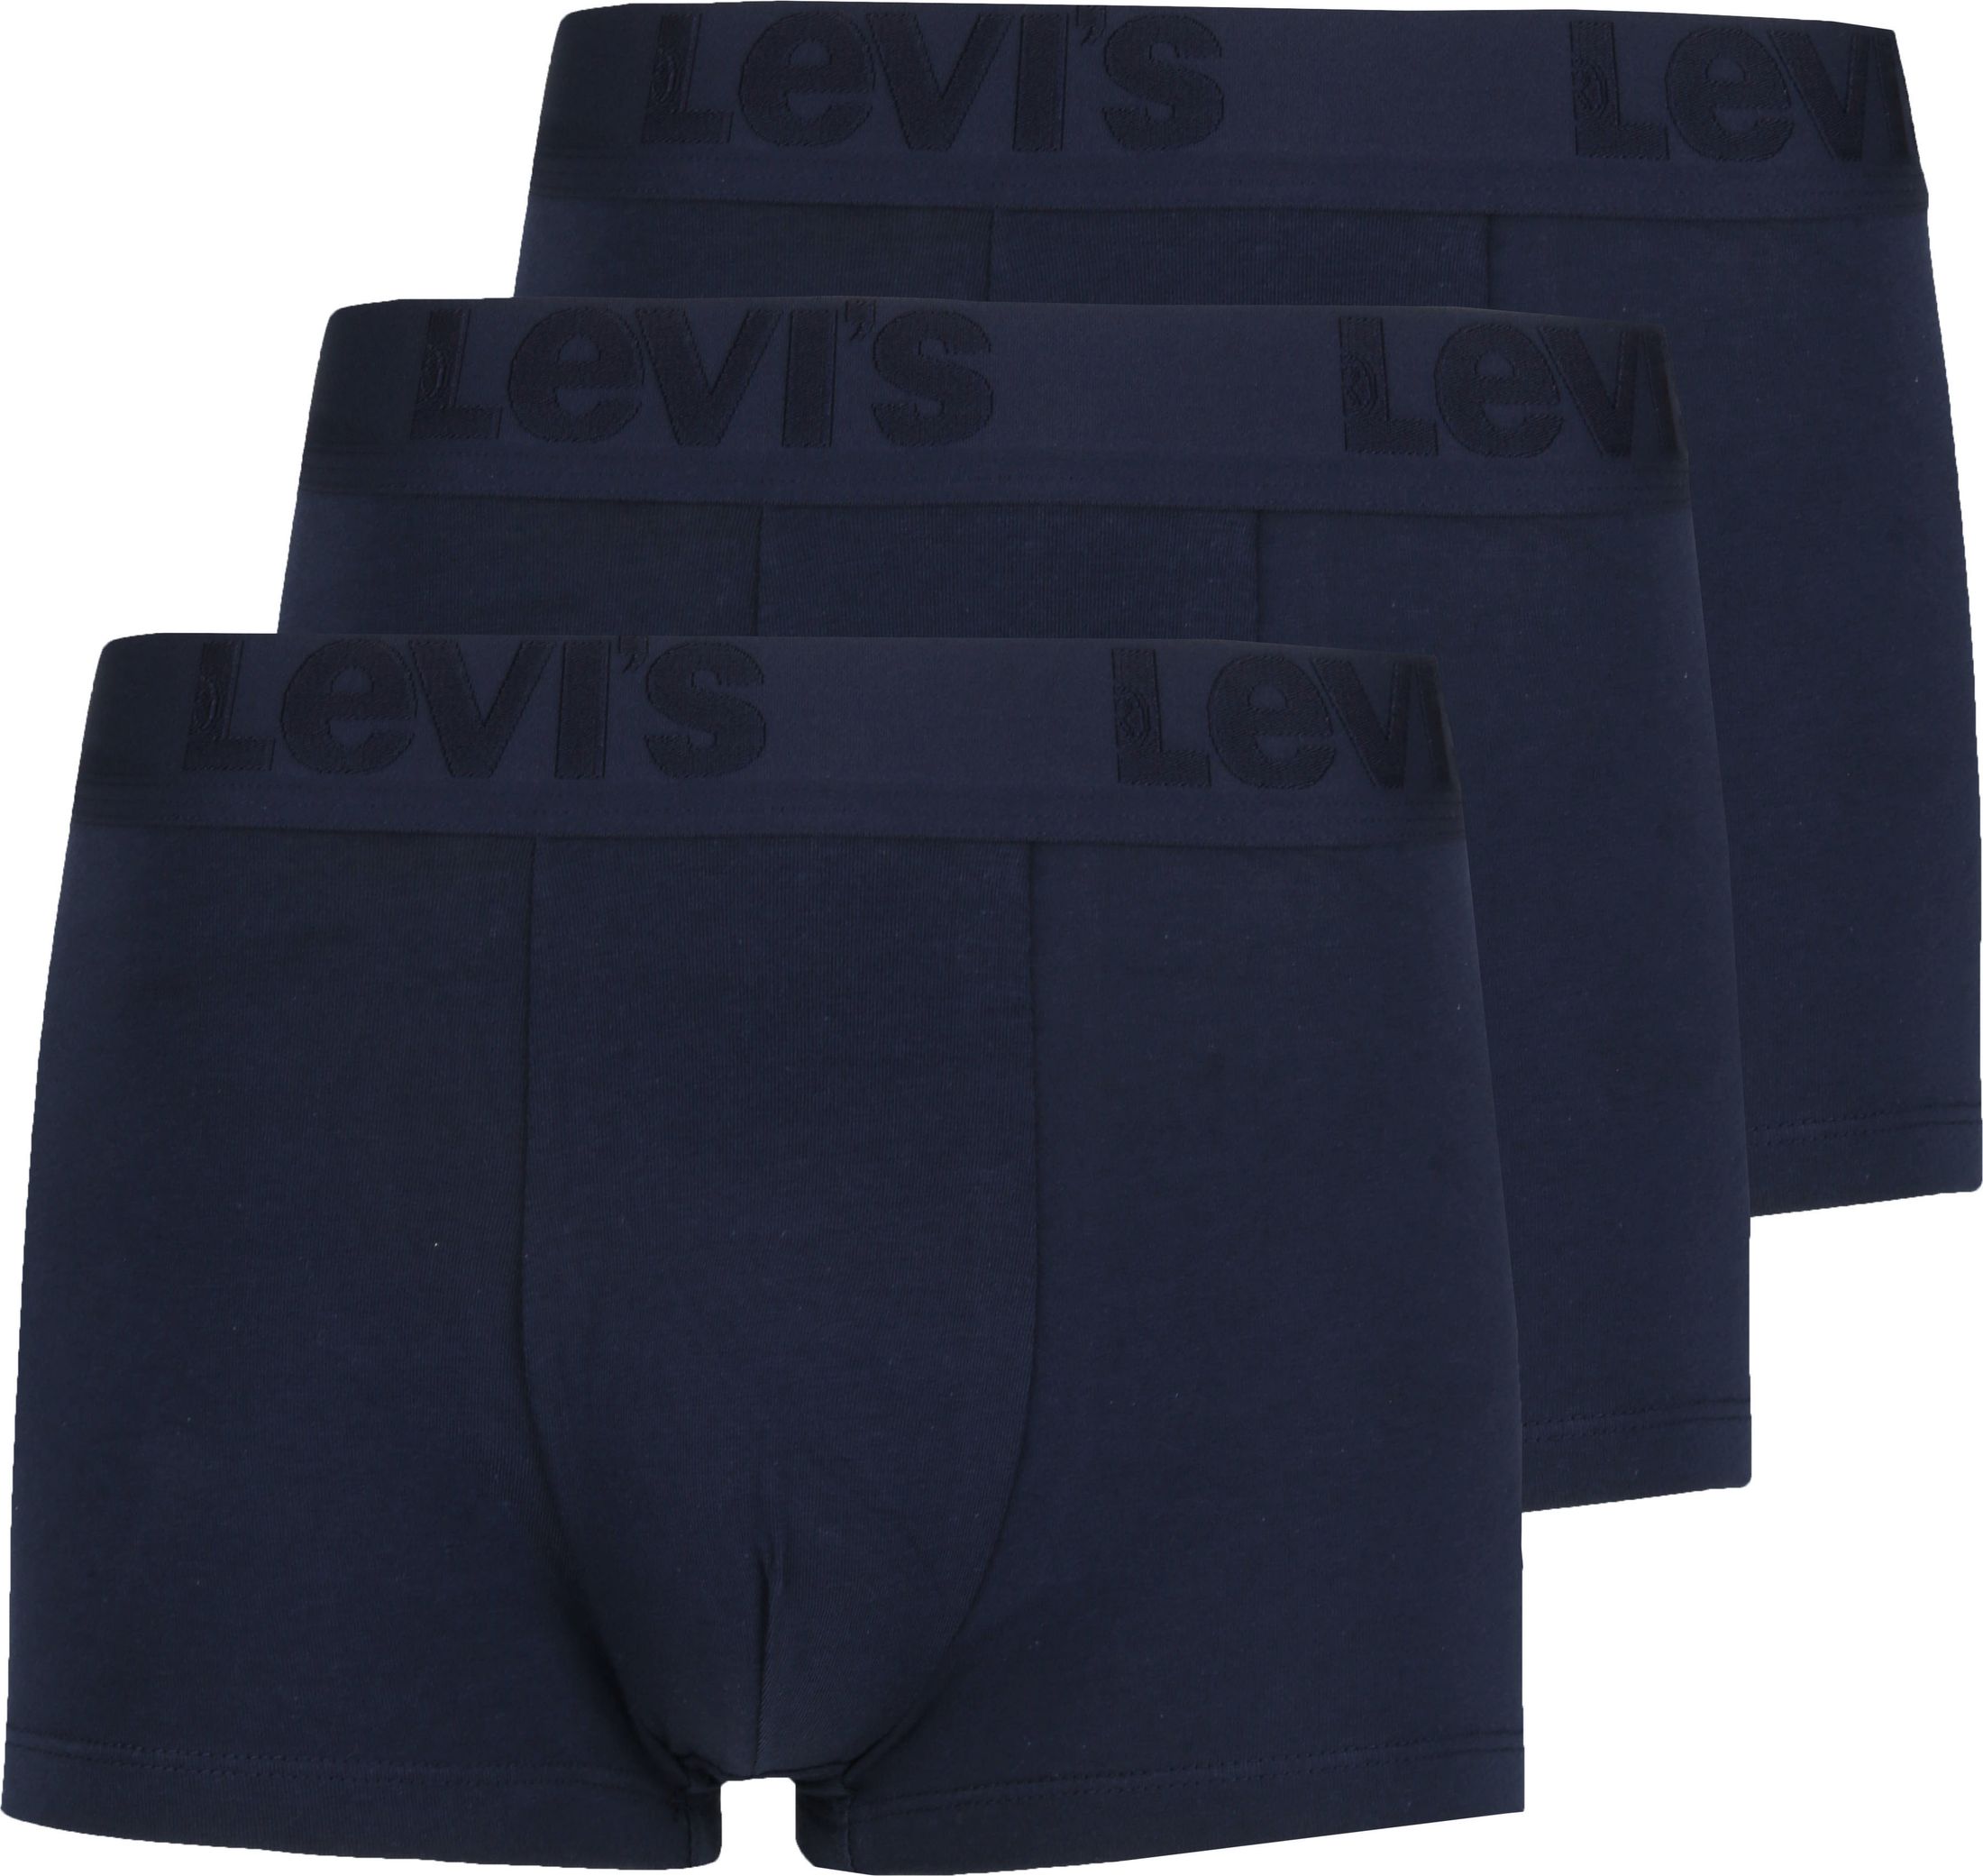 Levis - Levi's boxershorts 3-pack uni navy blue dark blue size s